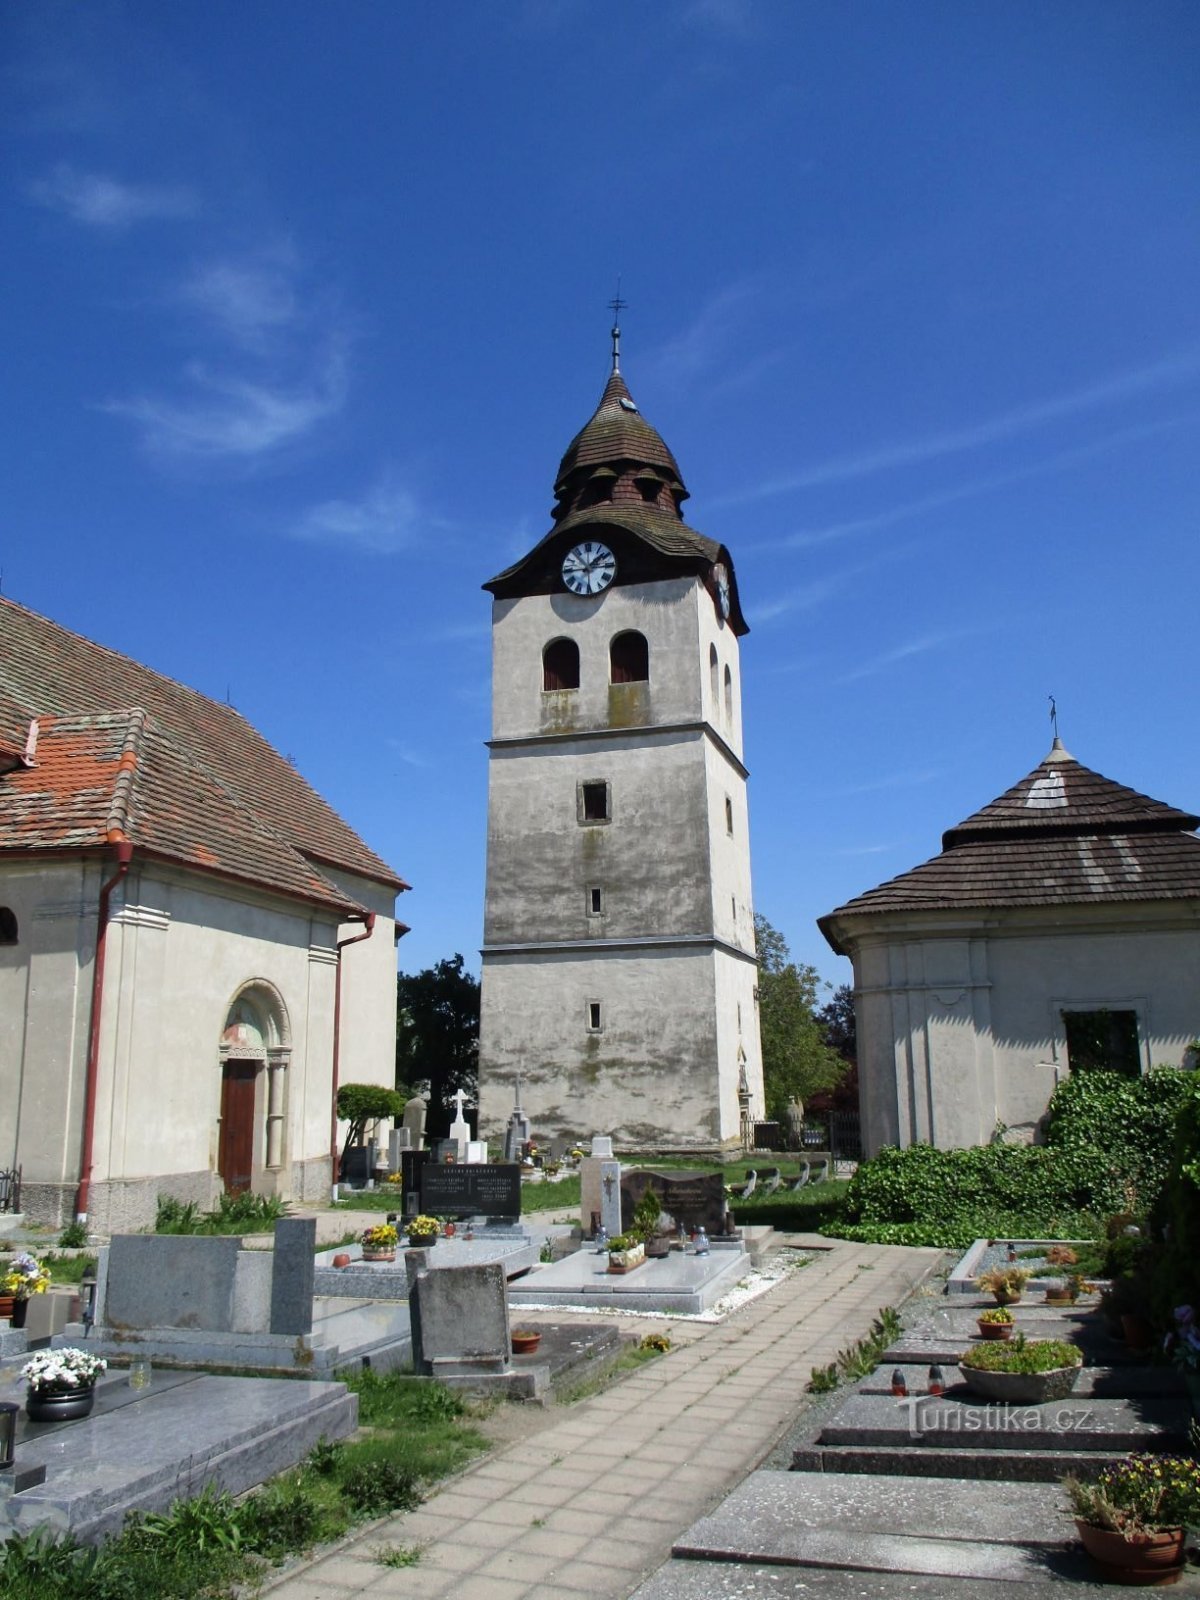 Καμπαναριό στην εκκλησία του Αγ. Nicholas (Bohuslavice nad Metují, 18.5.2020/XNUMX/XNUMX)